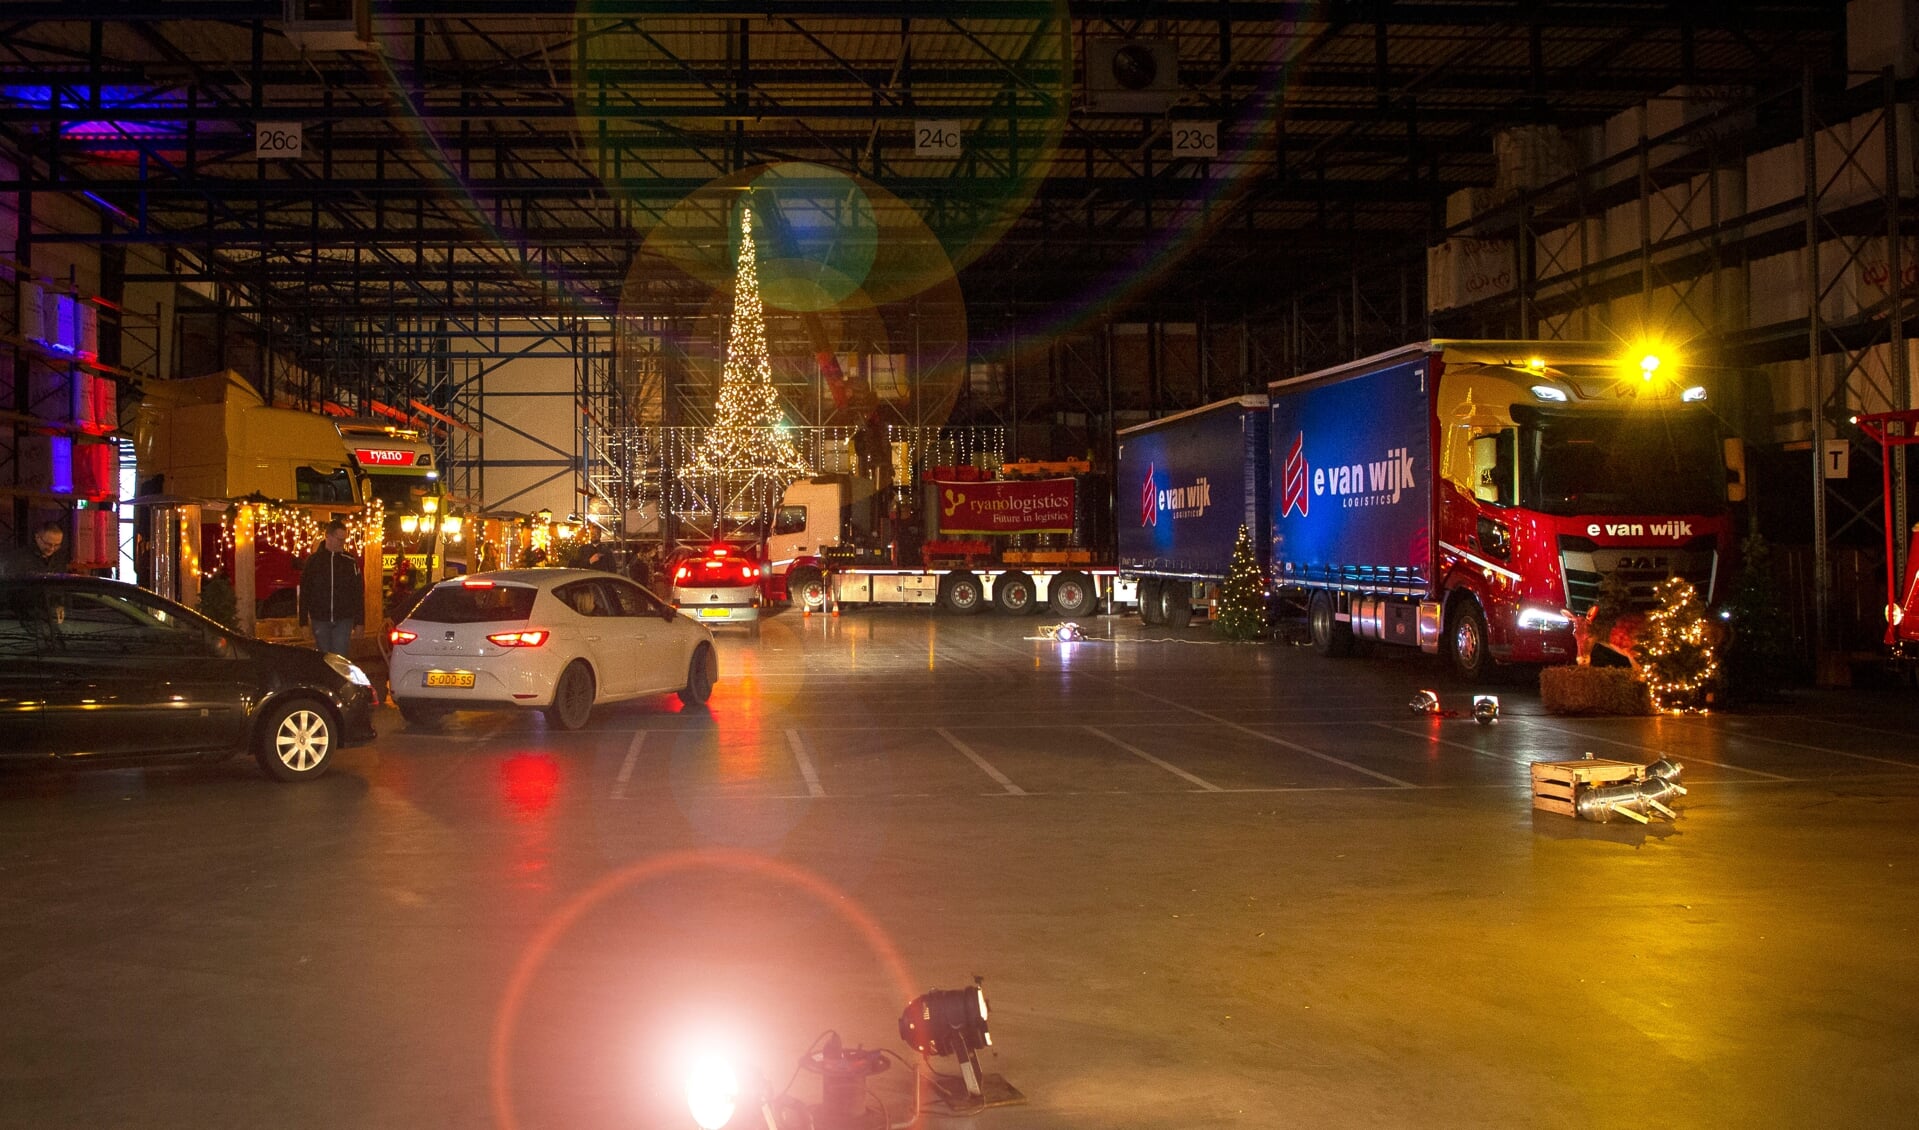 • De medewerkers reden met hun auto langs verschillende stops in het warehouse.